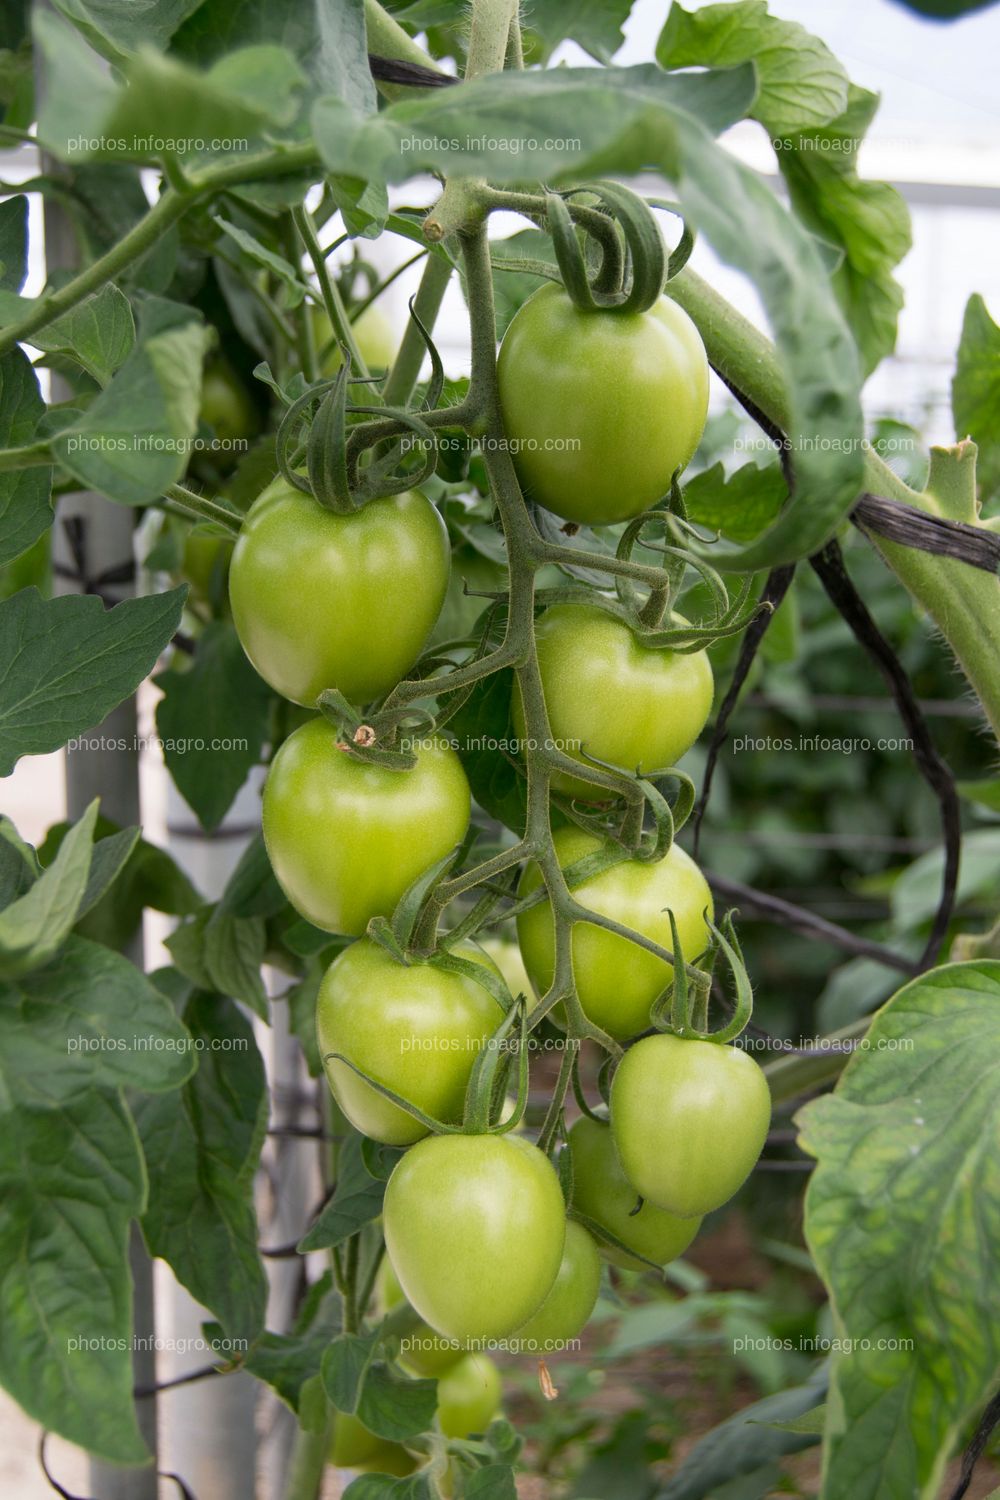 Racimo de tomate